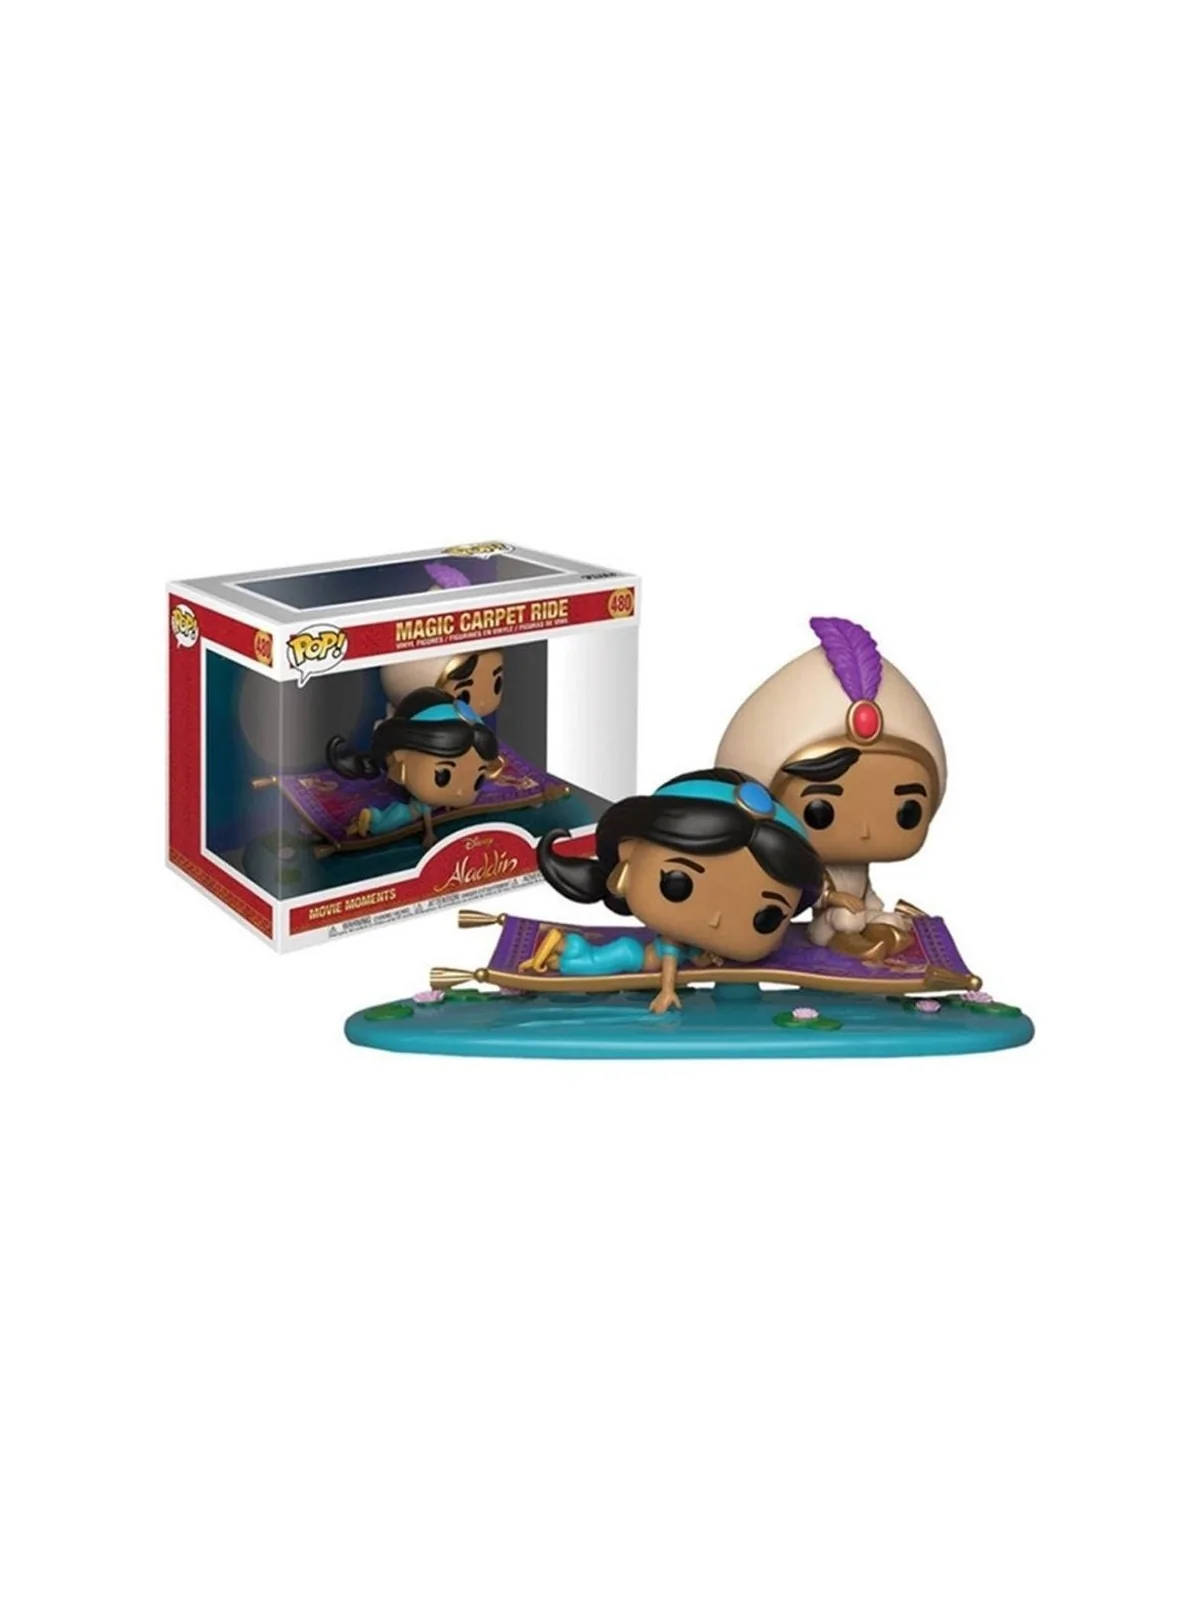 Comprar Funko POP! Movie Moments: Aladdin - Magic Carpet Ride (480) ba